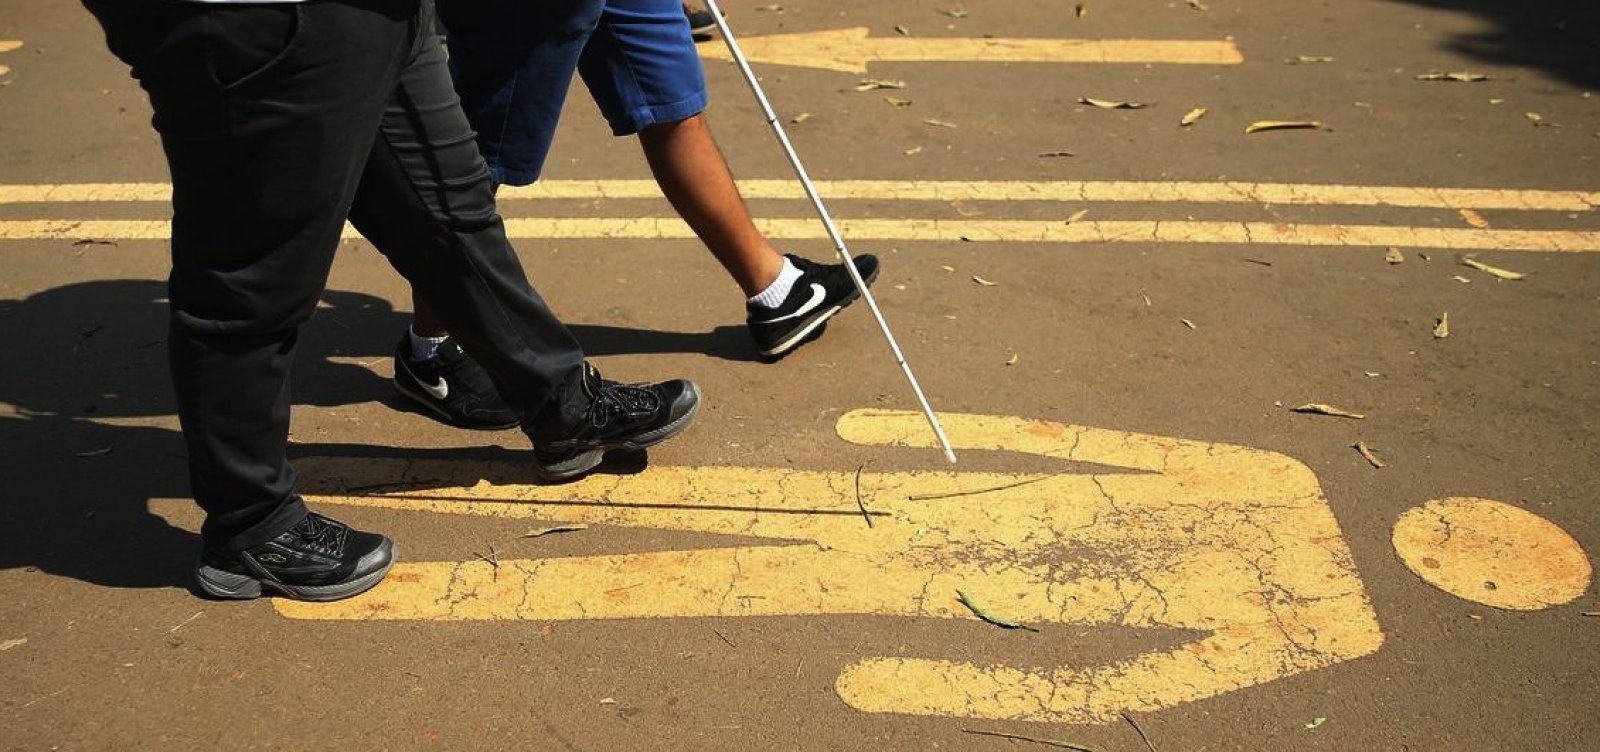 Substituir cotas para pessoas com deficiência por contribuição pode dar R$ 2,4 bi ao governo